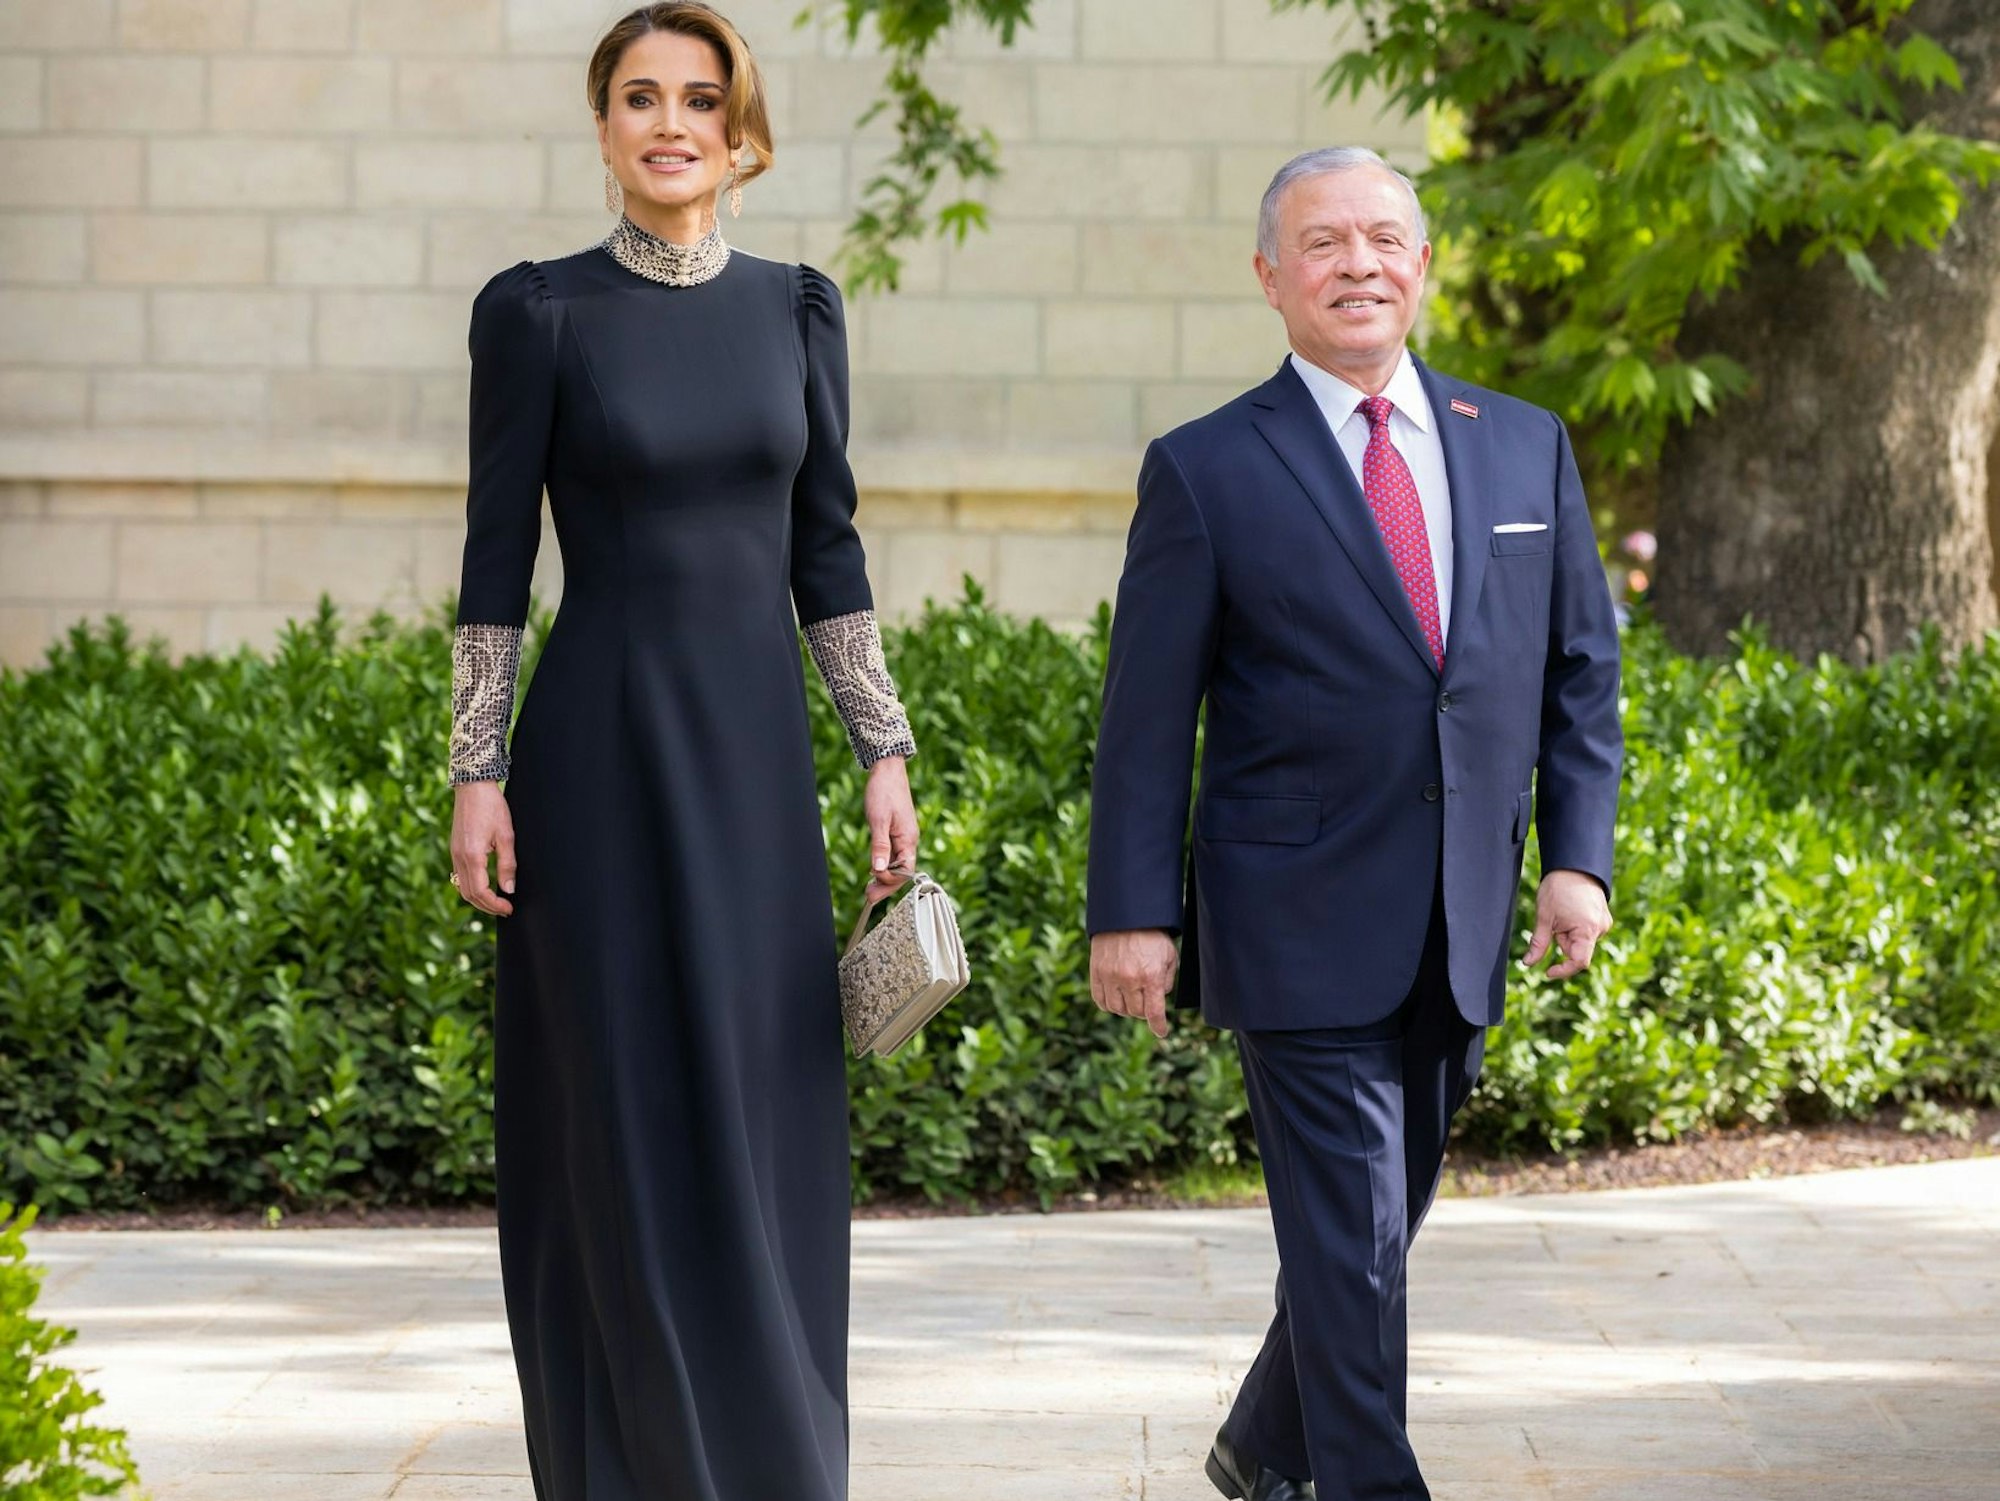 Abdullah II. bin al-Hussein, König von Jordanien, kommt in Begleitung seiner Frau Rania zur Hochzeit seines Sohnes.